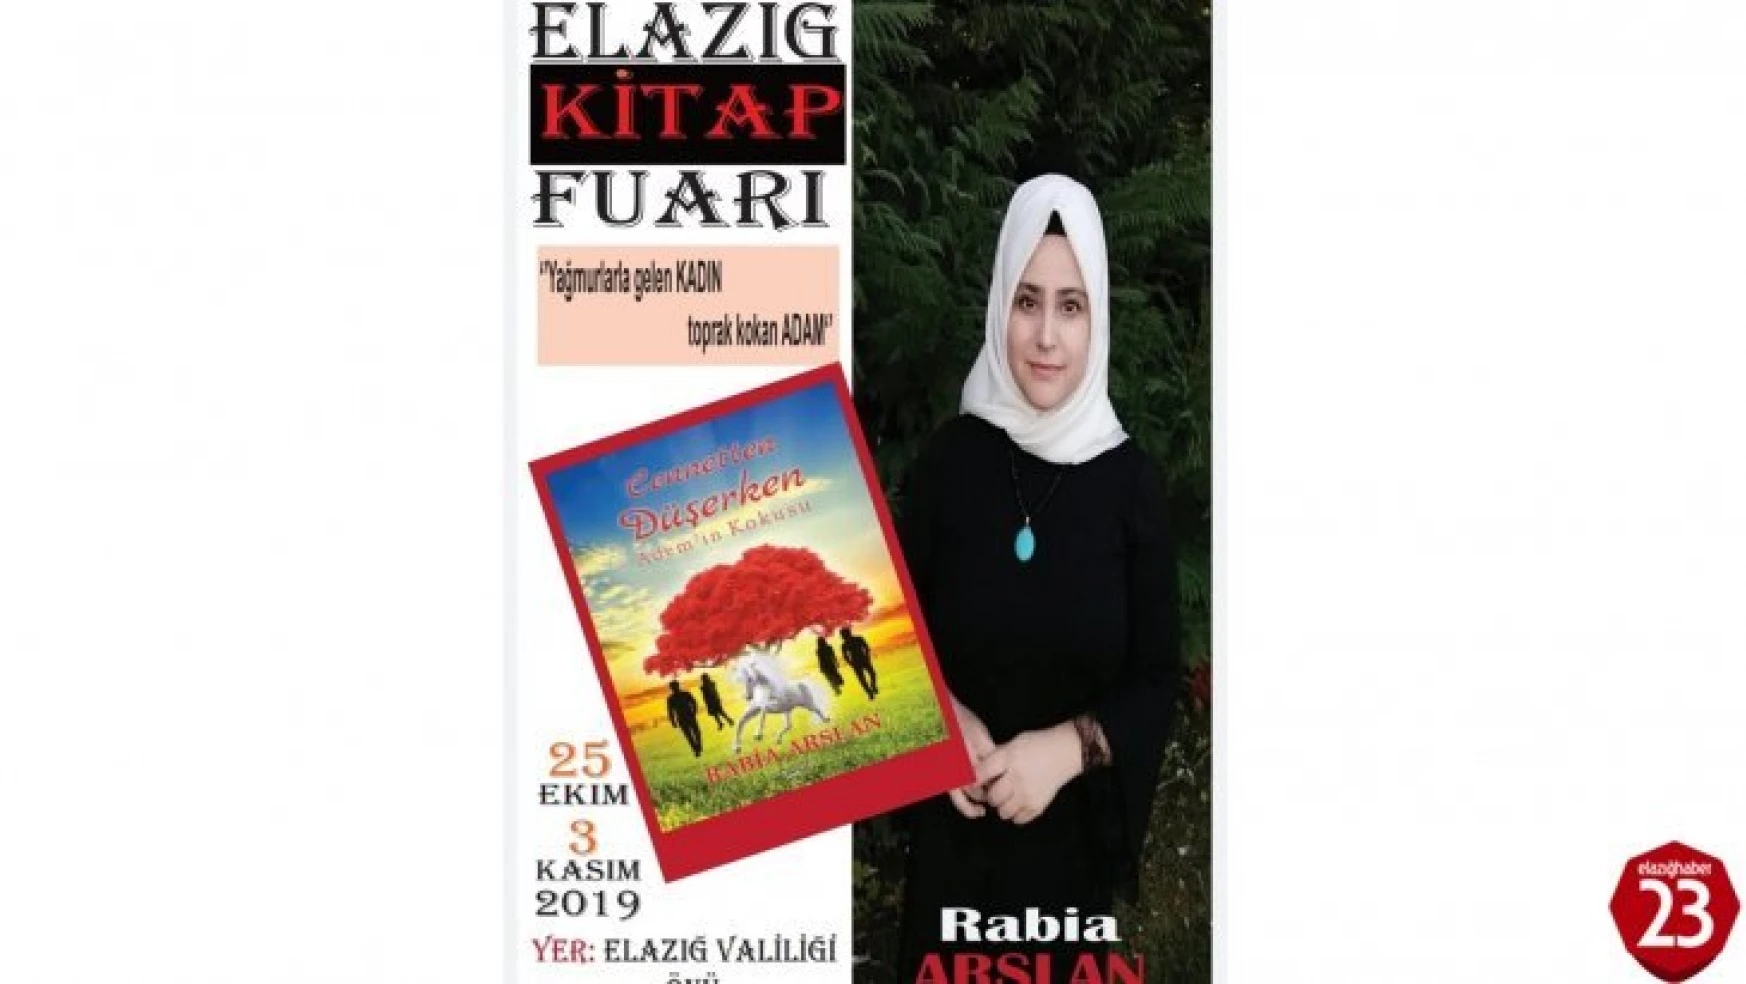 Elazığ'lı Yazar Rabia Arslan Okurlarıyla Buluşacak